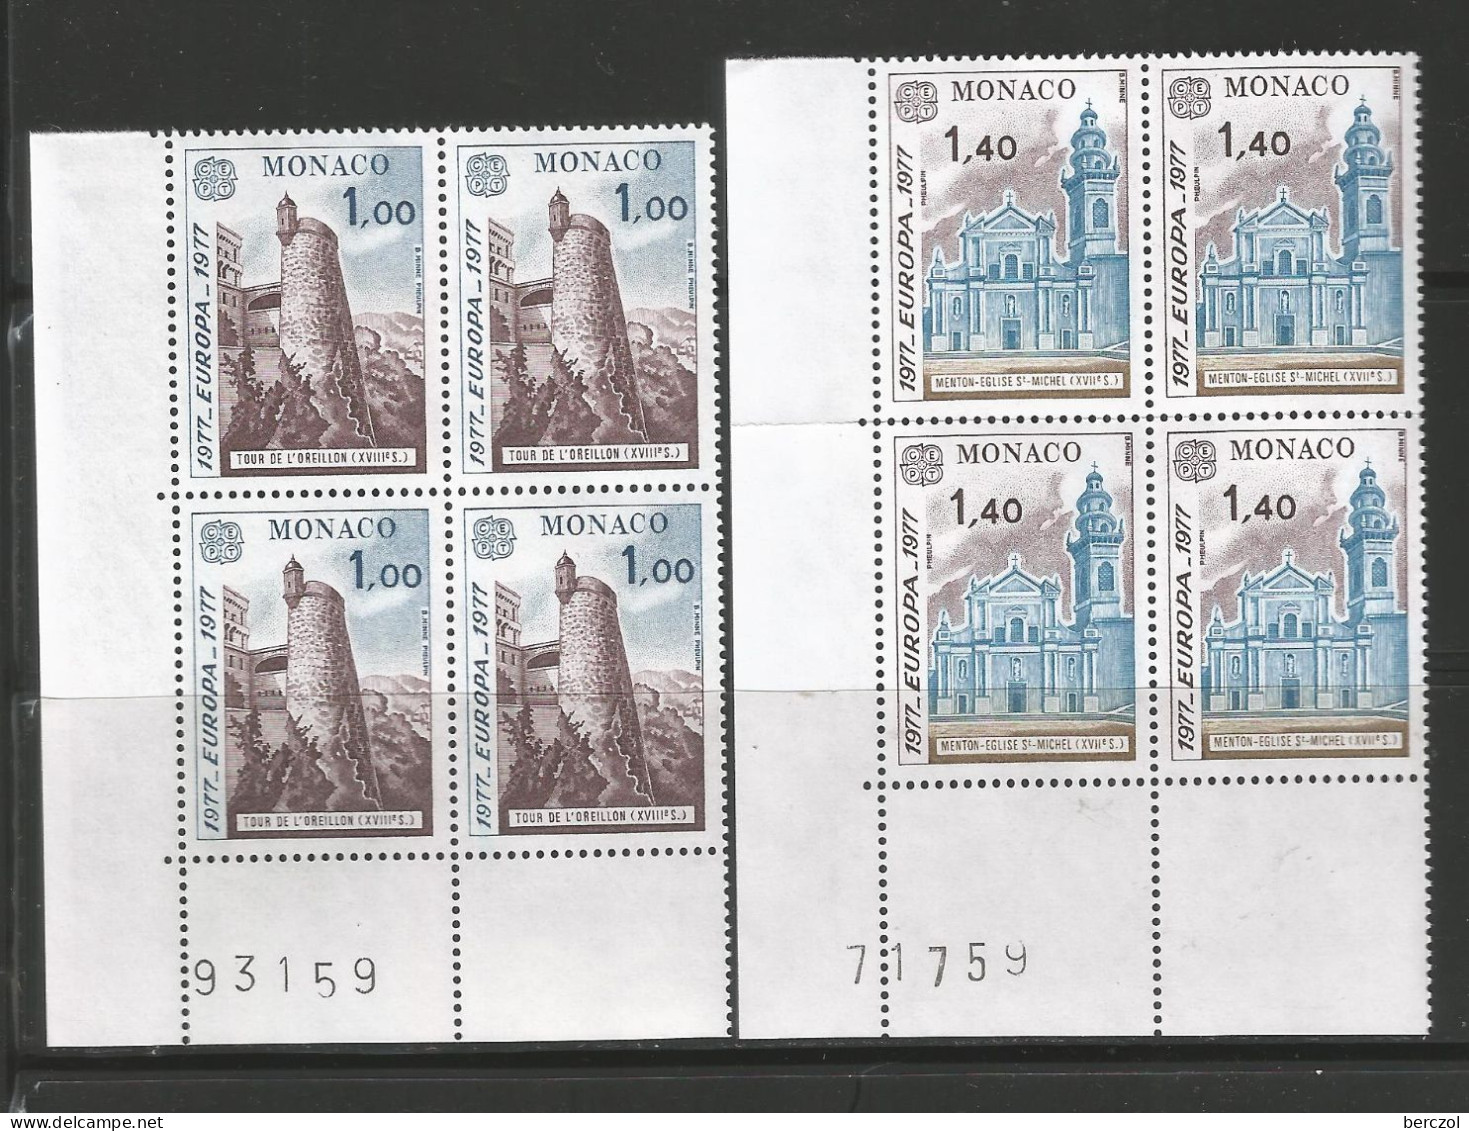 MONACO ANNEE 1977 N°1101, 1102 NEUFS** MNH EN BLOCS DE 4 EXEMPLAIRES COTE 26,00€ - Unused Stamps